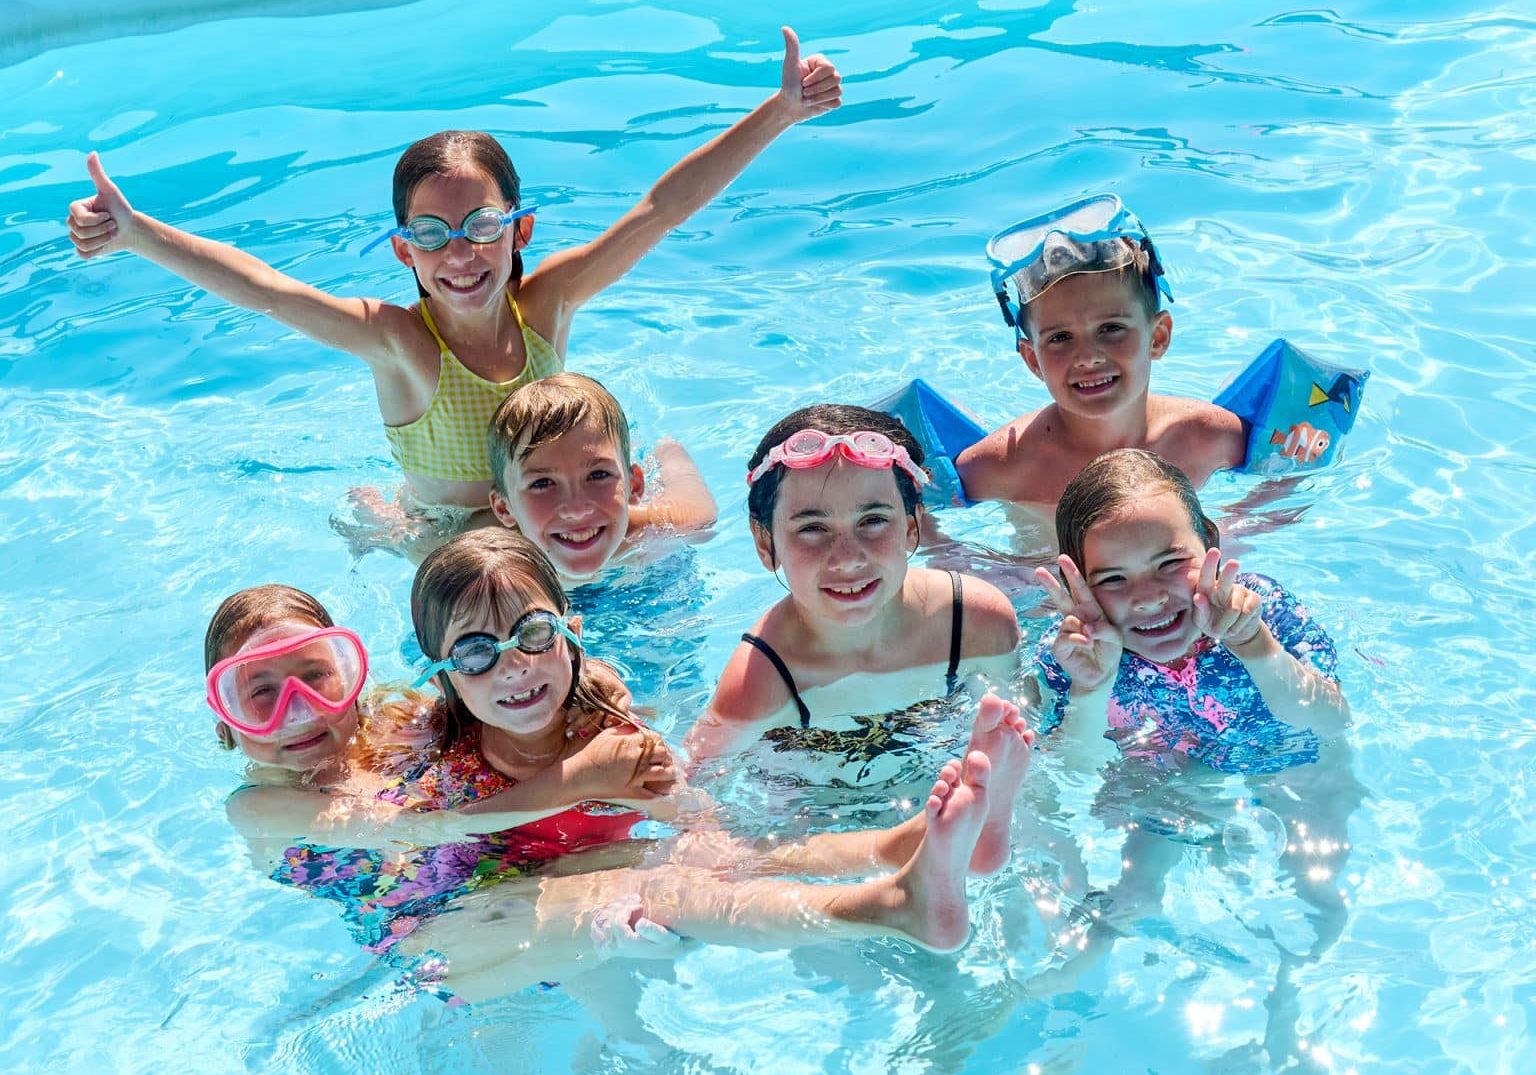 Kids having fun in a swimming pool